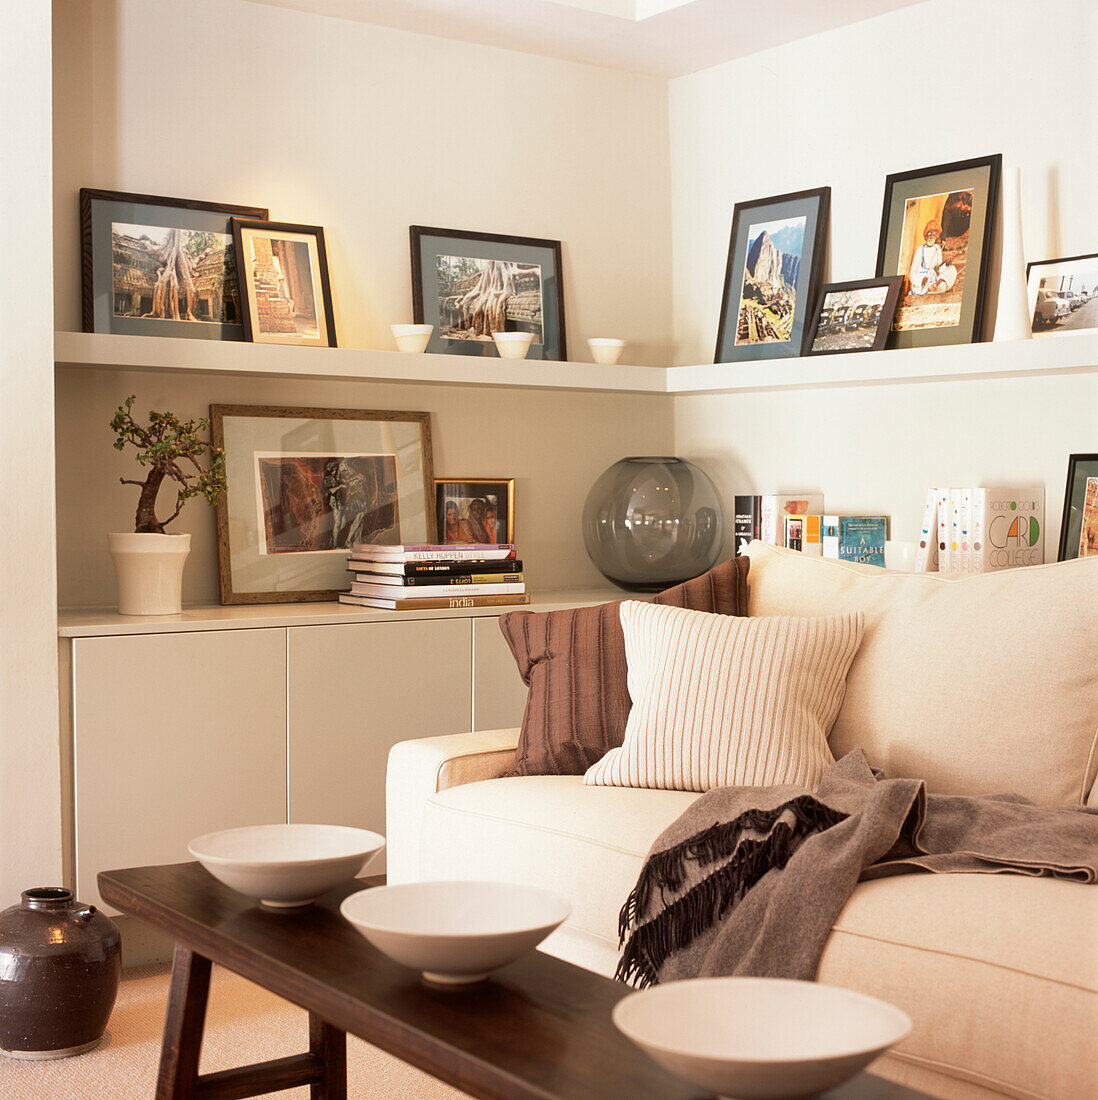 Wohnzimmerecke in Cremetönen mit Einbauschrank und Regalen